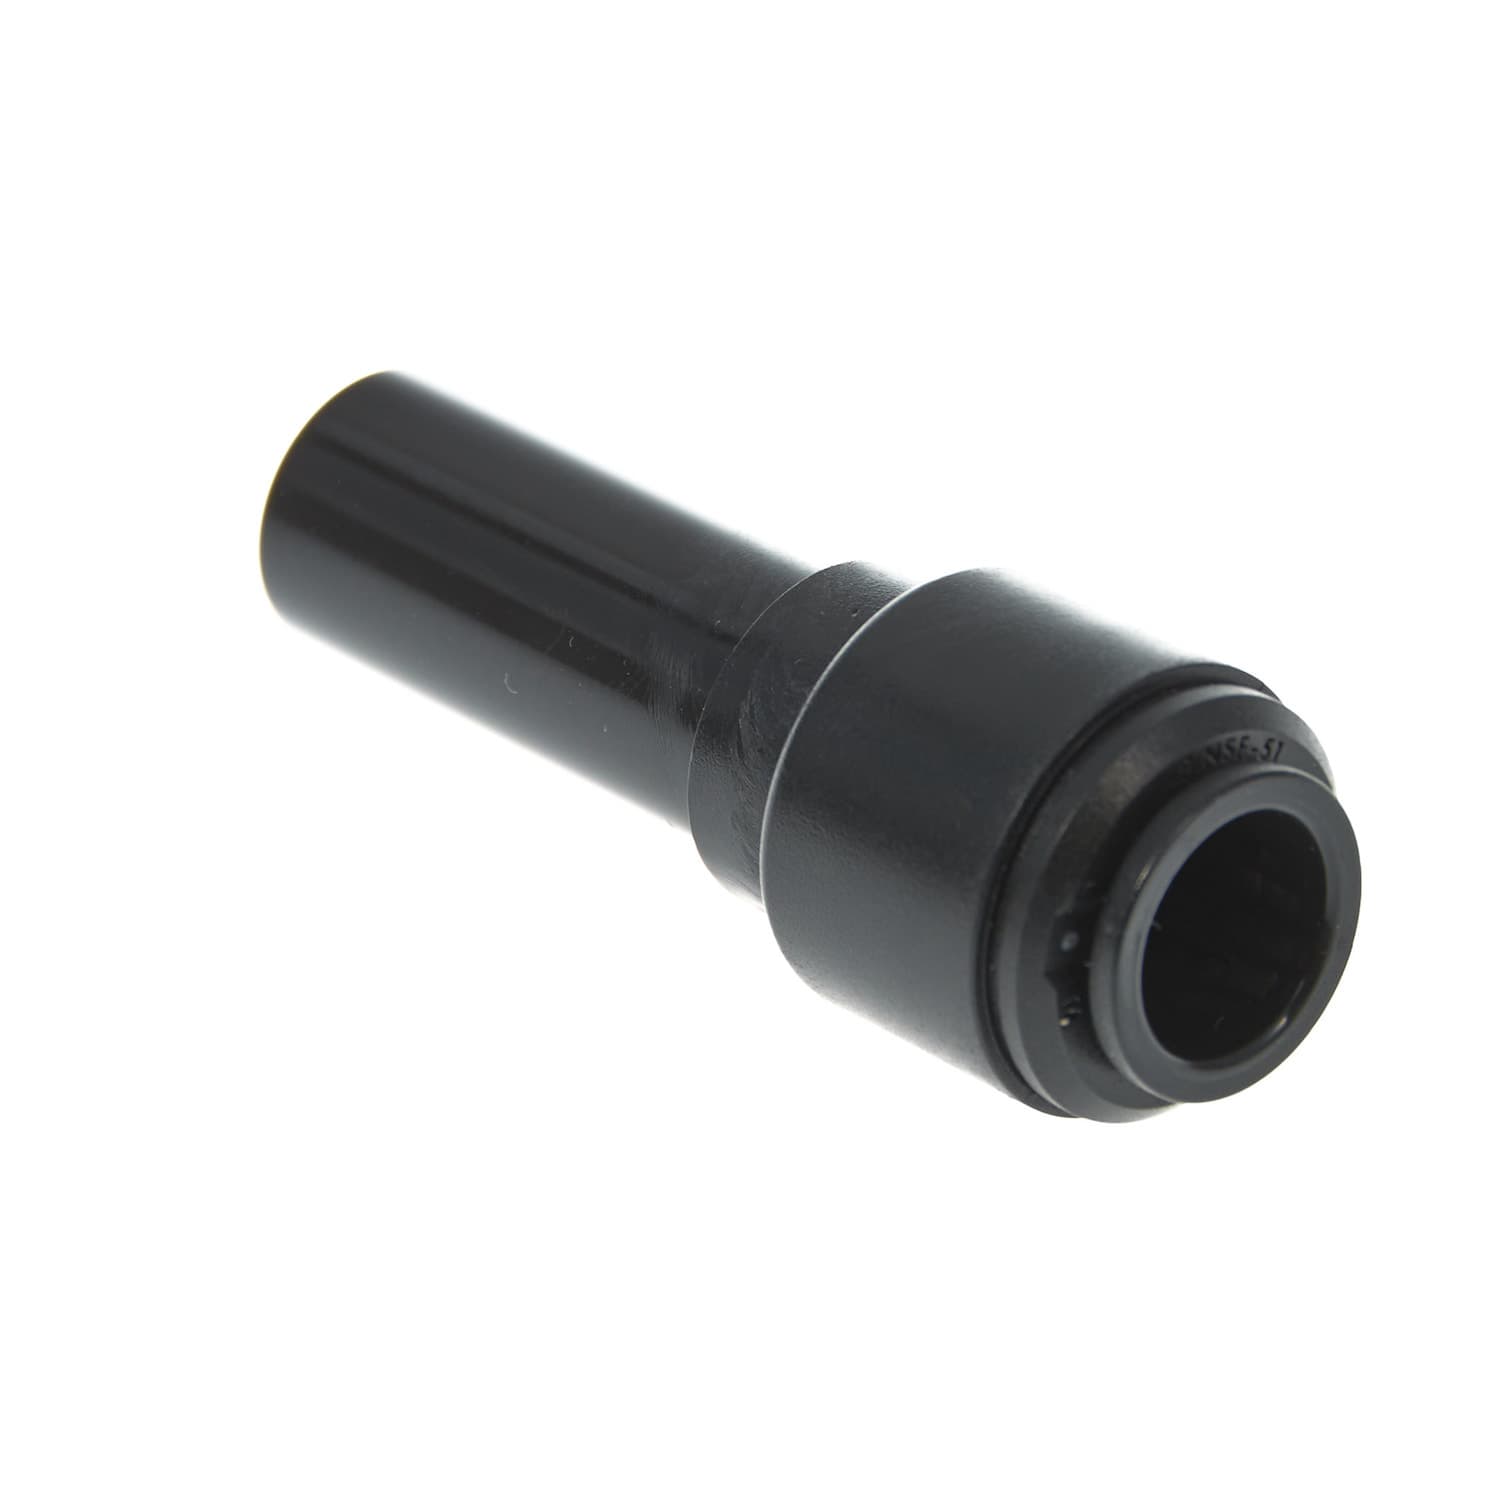 Einsteck-Reduzierverbinder mit 15 mm Stutzen in schwarz